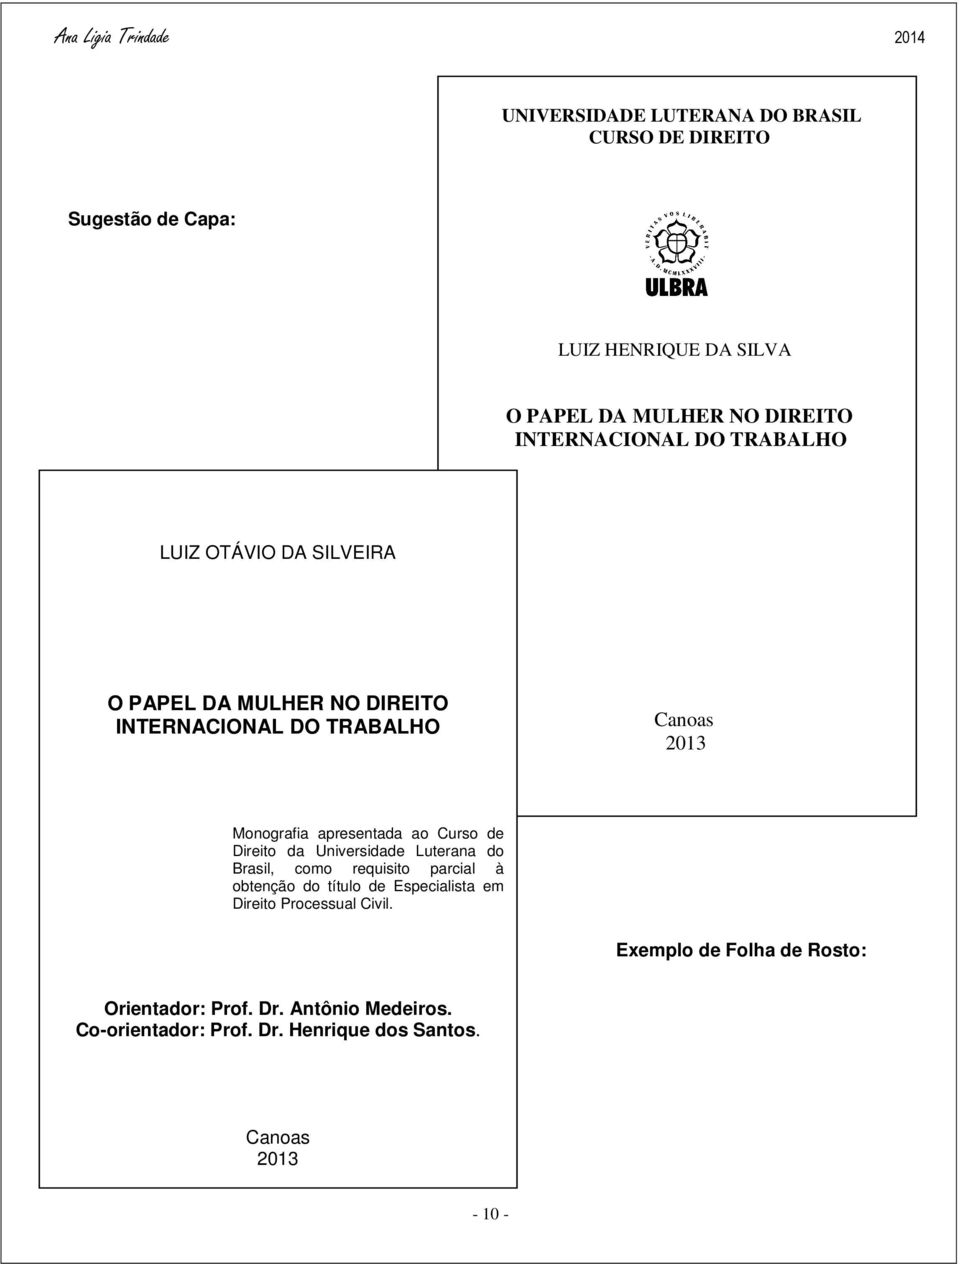 Direito da Universidade Luterana do Brasil, como requisito parcial à obtenção do título de Especialista em Direito Processual Civil.